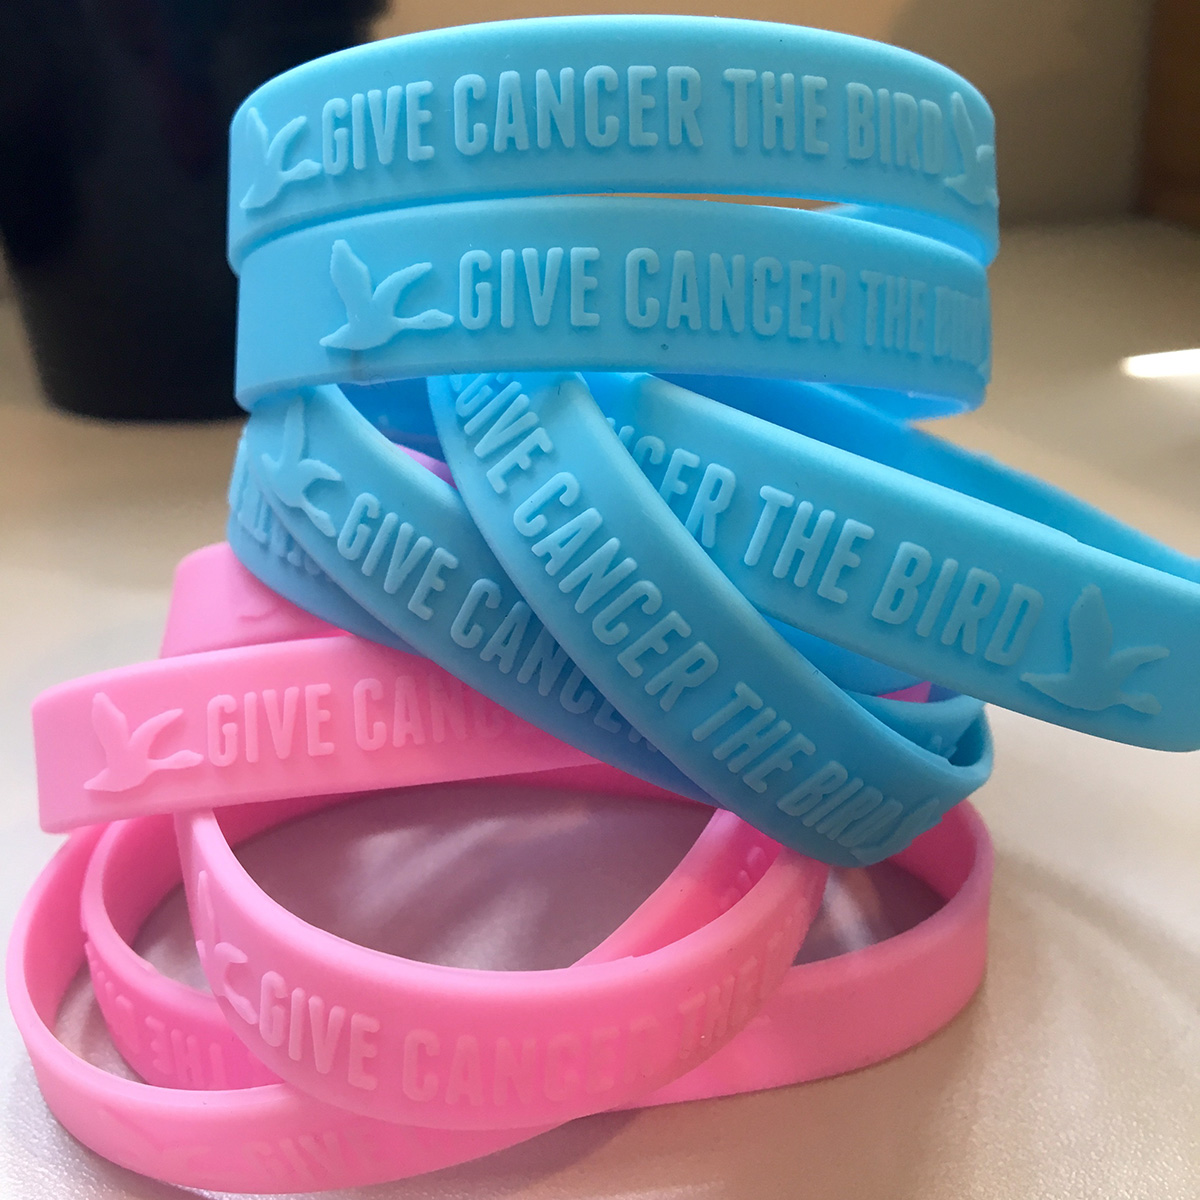 Give Cancer the Bird bracelets